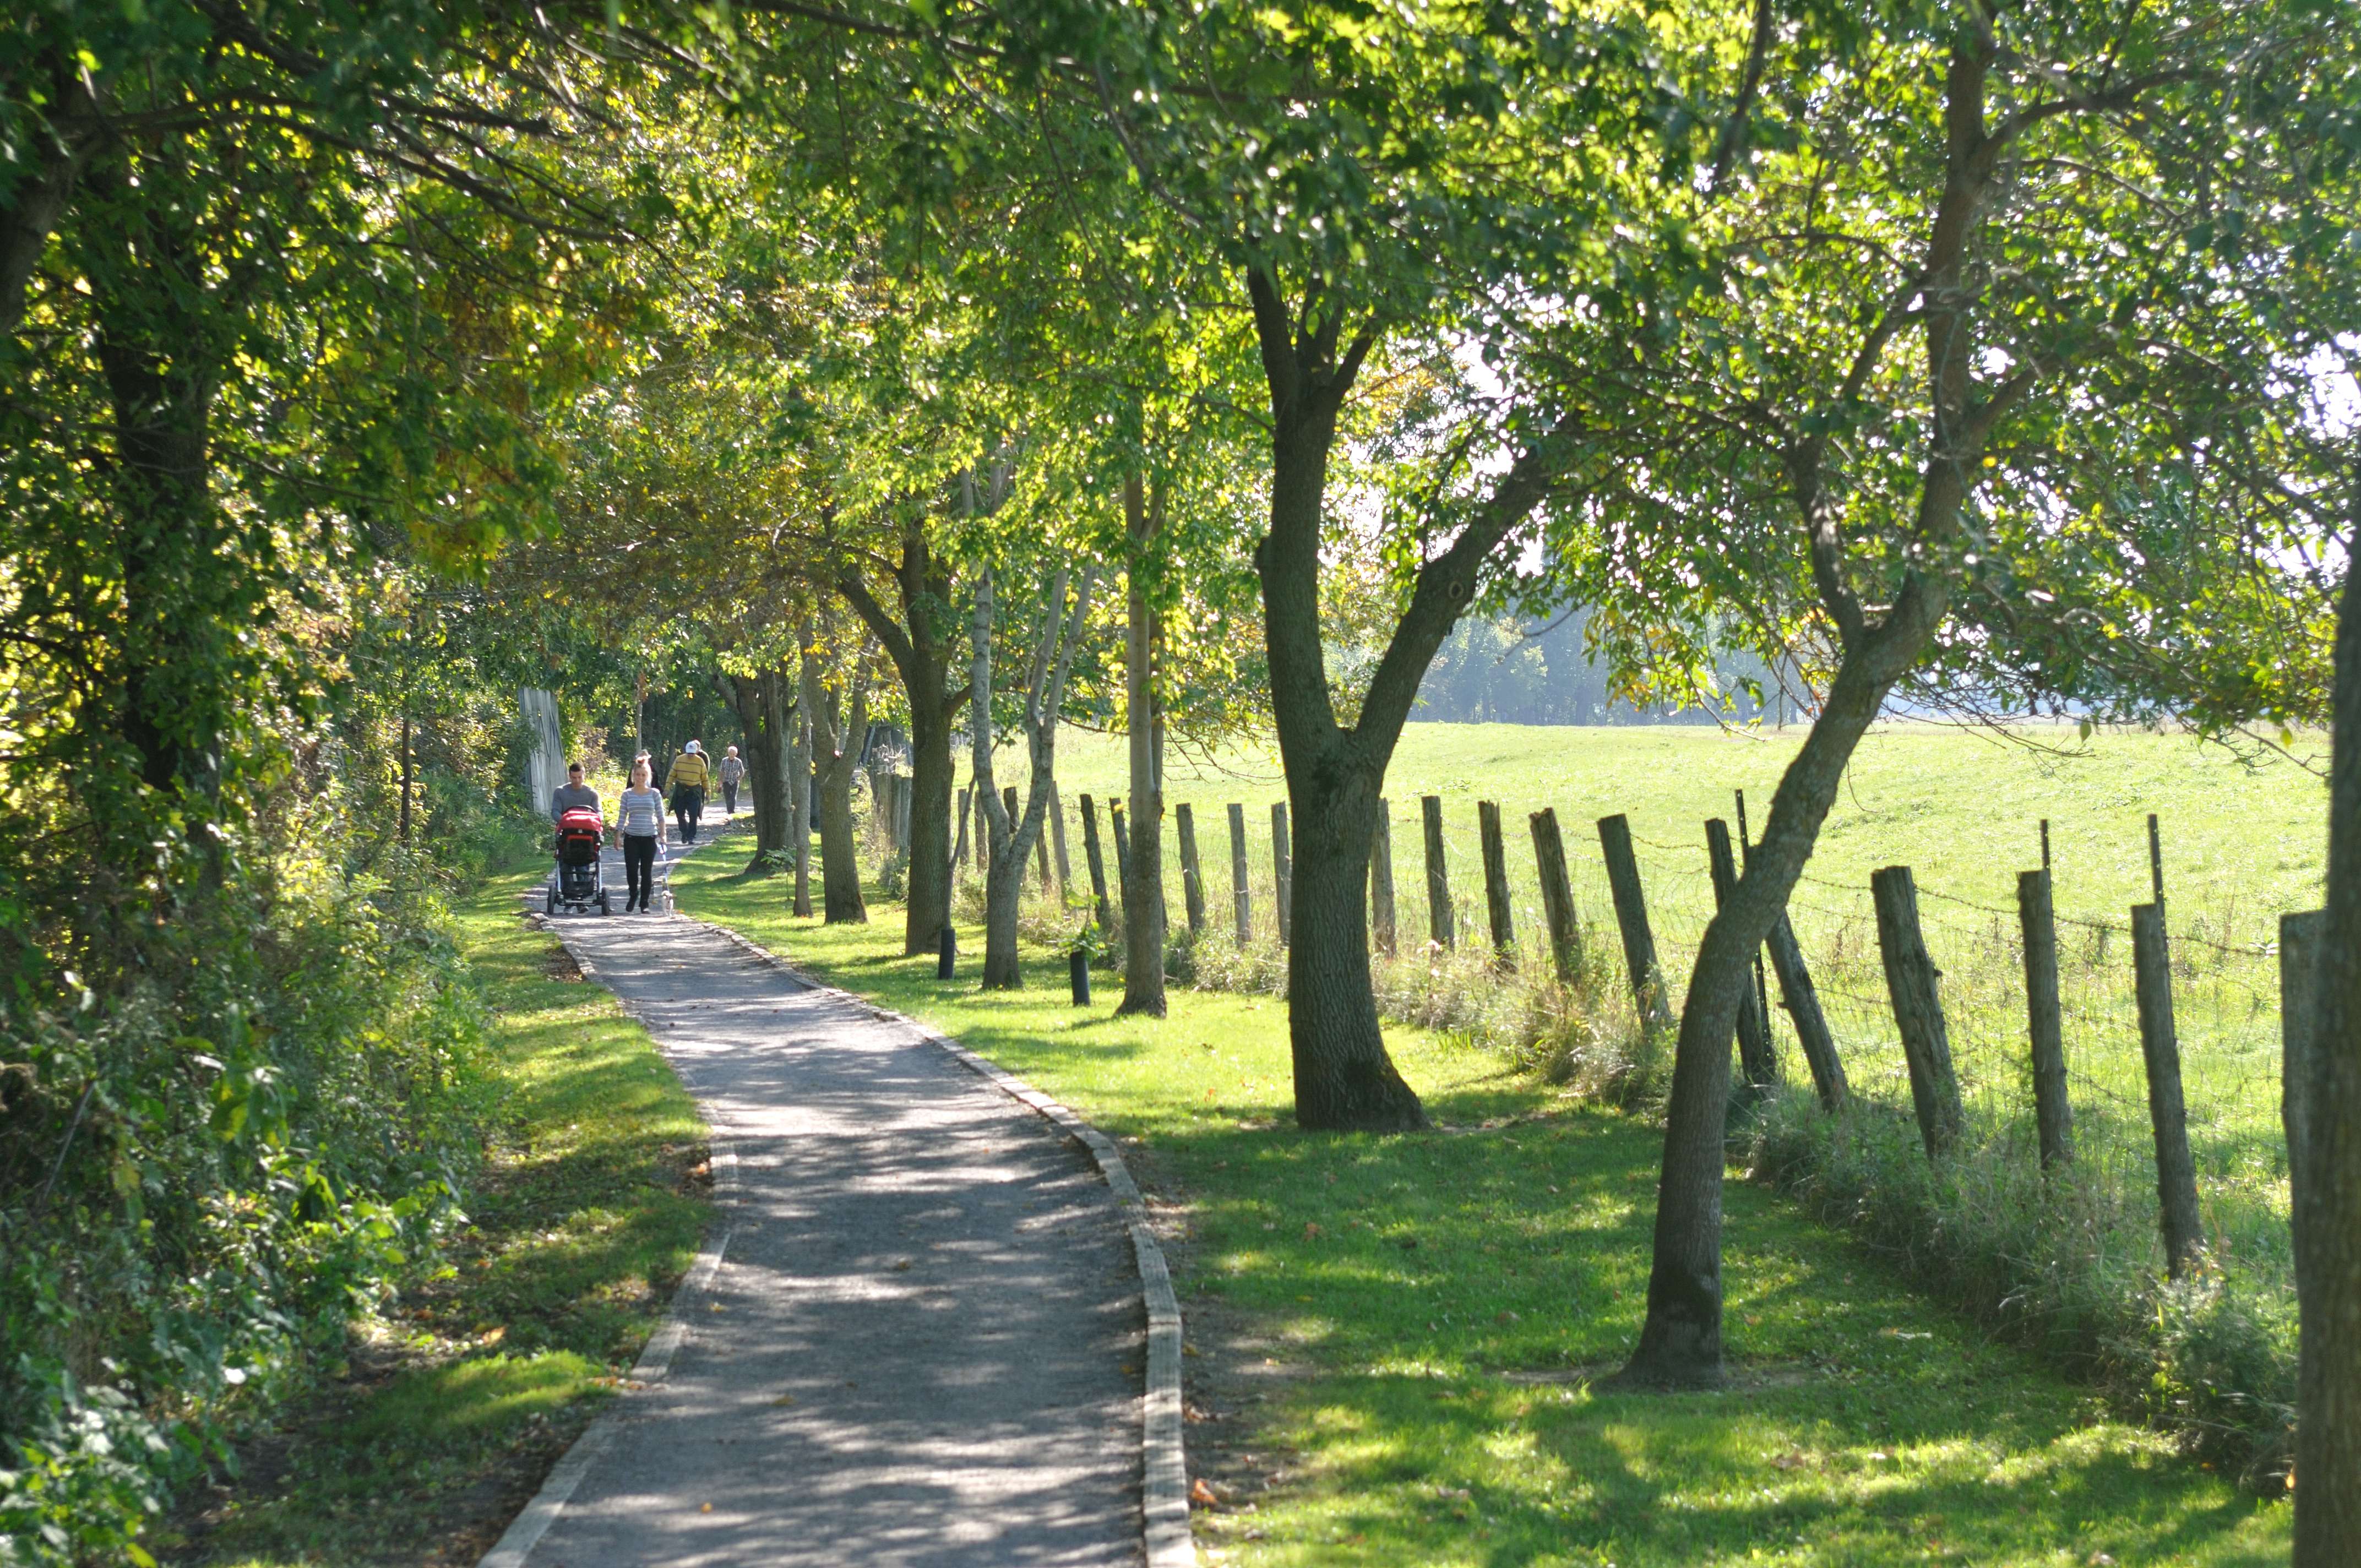 Sentier de randonnée ombragé près d'un champ avec des gens marchant au loin